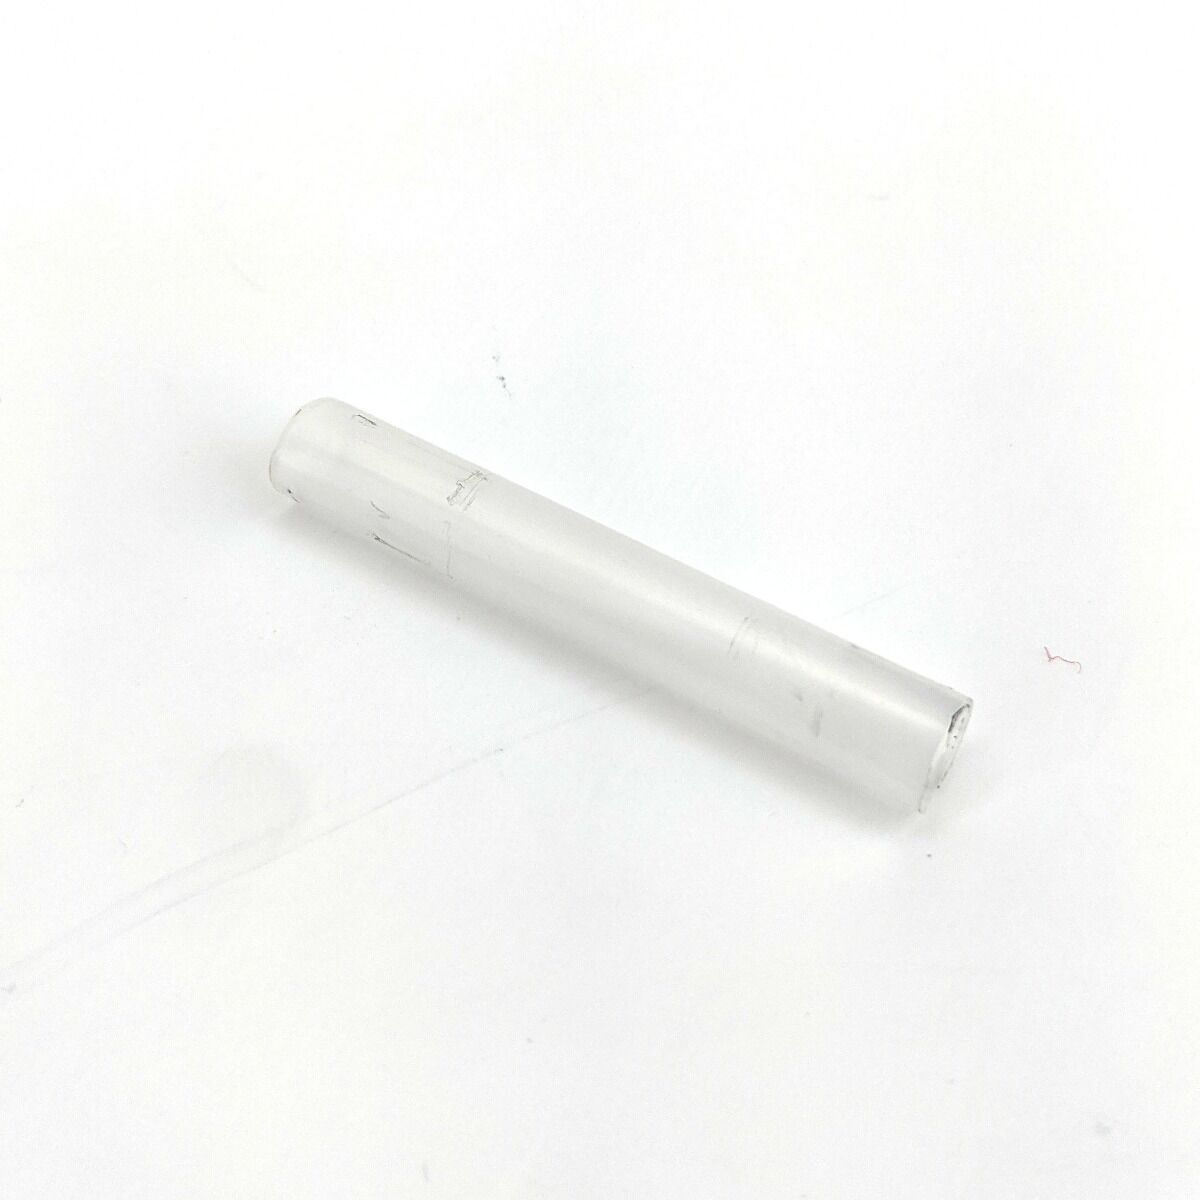 Rigid Plastic Joiner 8mm (5/16)OD x 6mm ID x 50mm Long